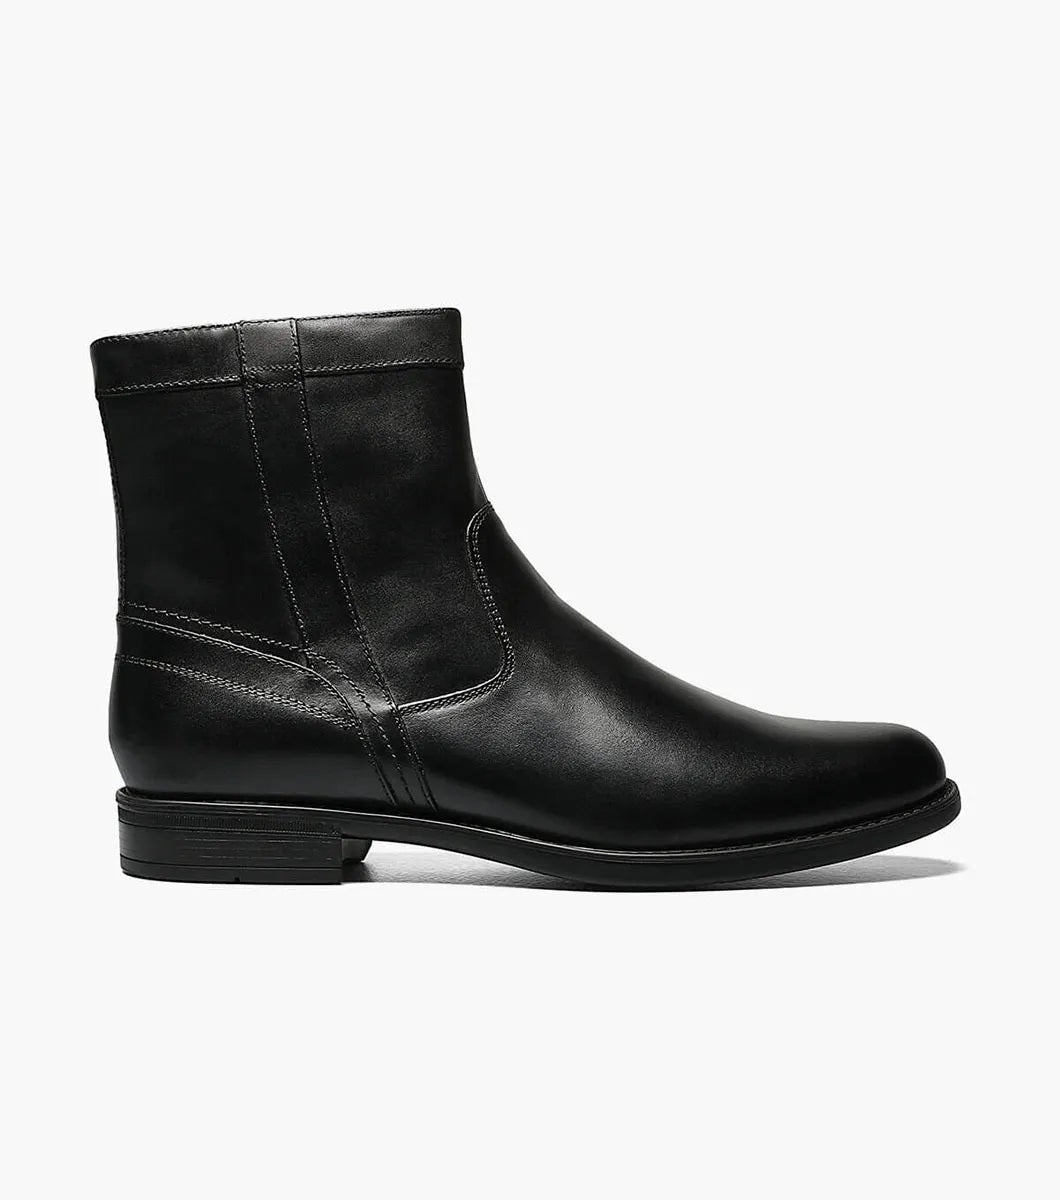 Florsheim - Midtown Plain Toe Zipper Boot - Black